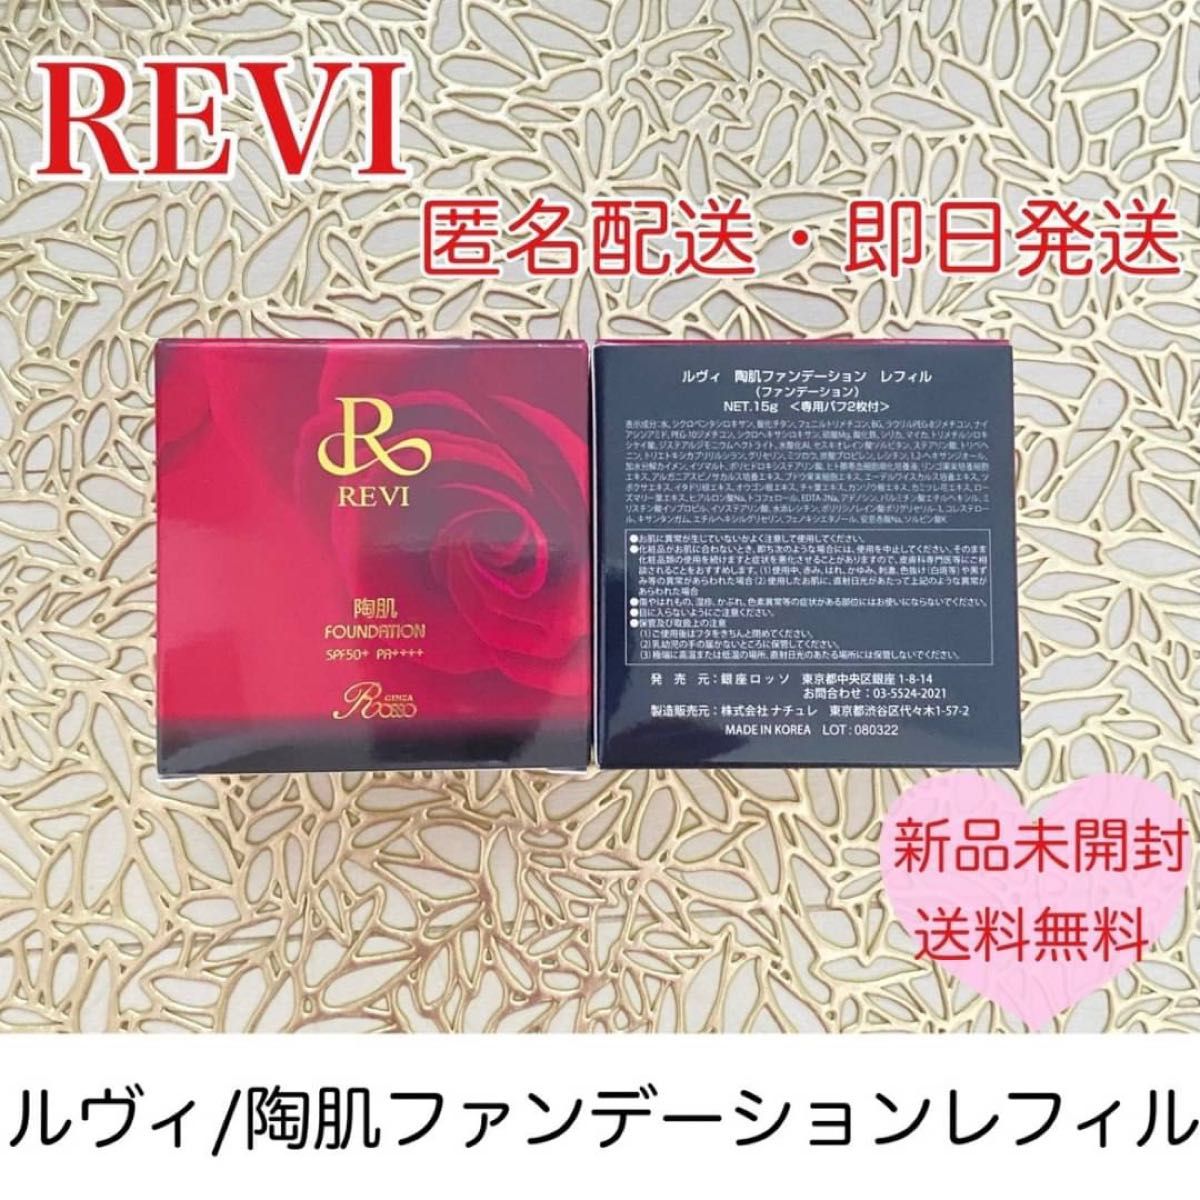 REVI CYフェイスパウダー メイク 乾燥予防 カバー力 美容 化粧品 www